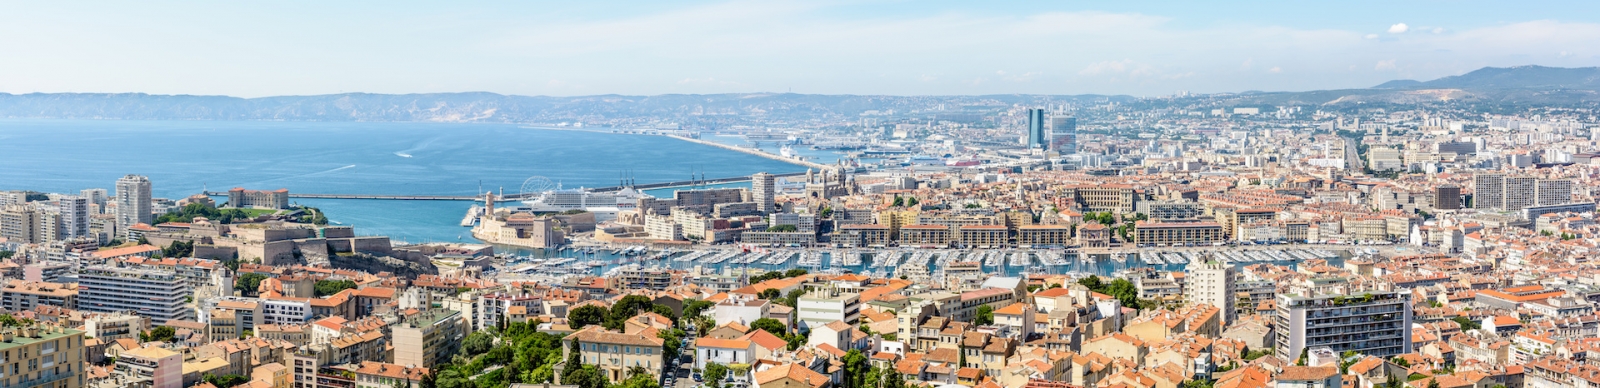 Vue panoramique sur le Vieux Port, le centre historique du Panier, le Grand Port Maritime de Marseille, le littoral et les quartiers nord au loin